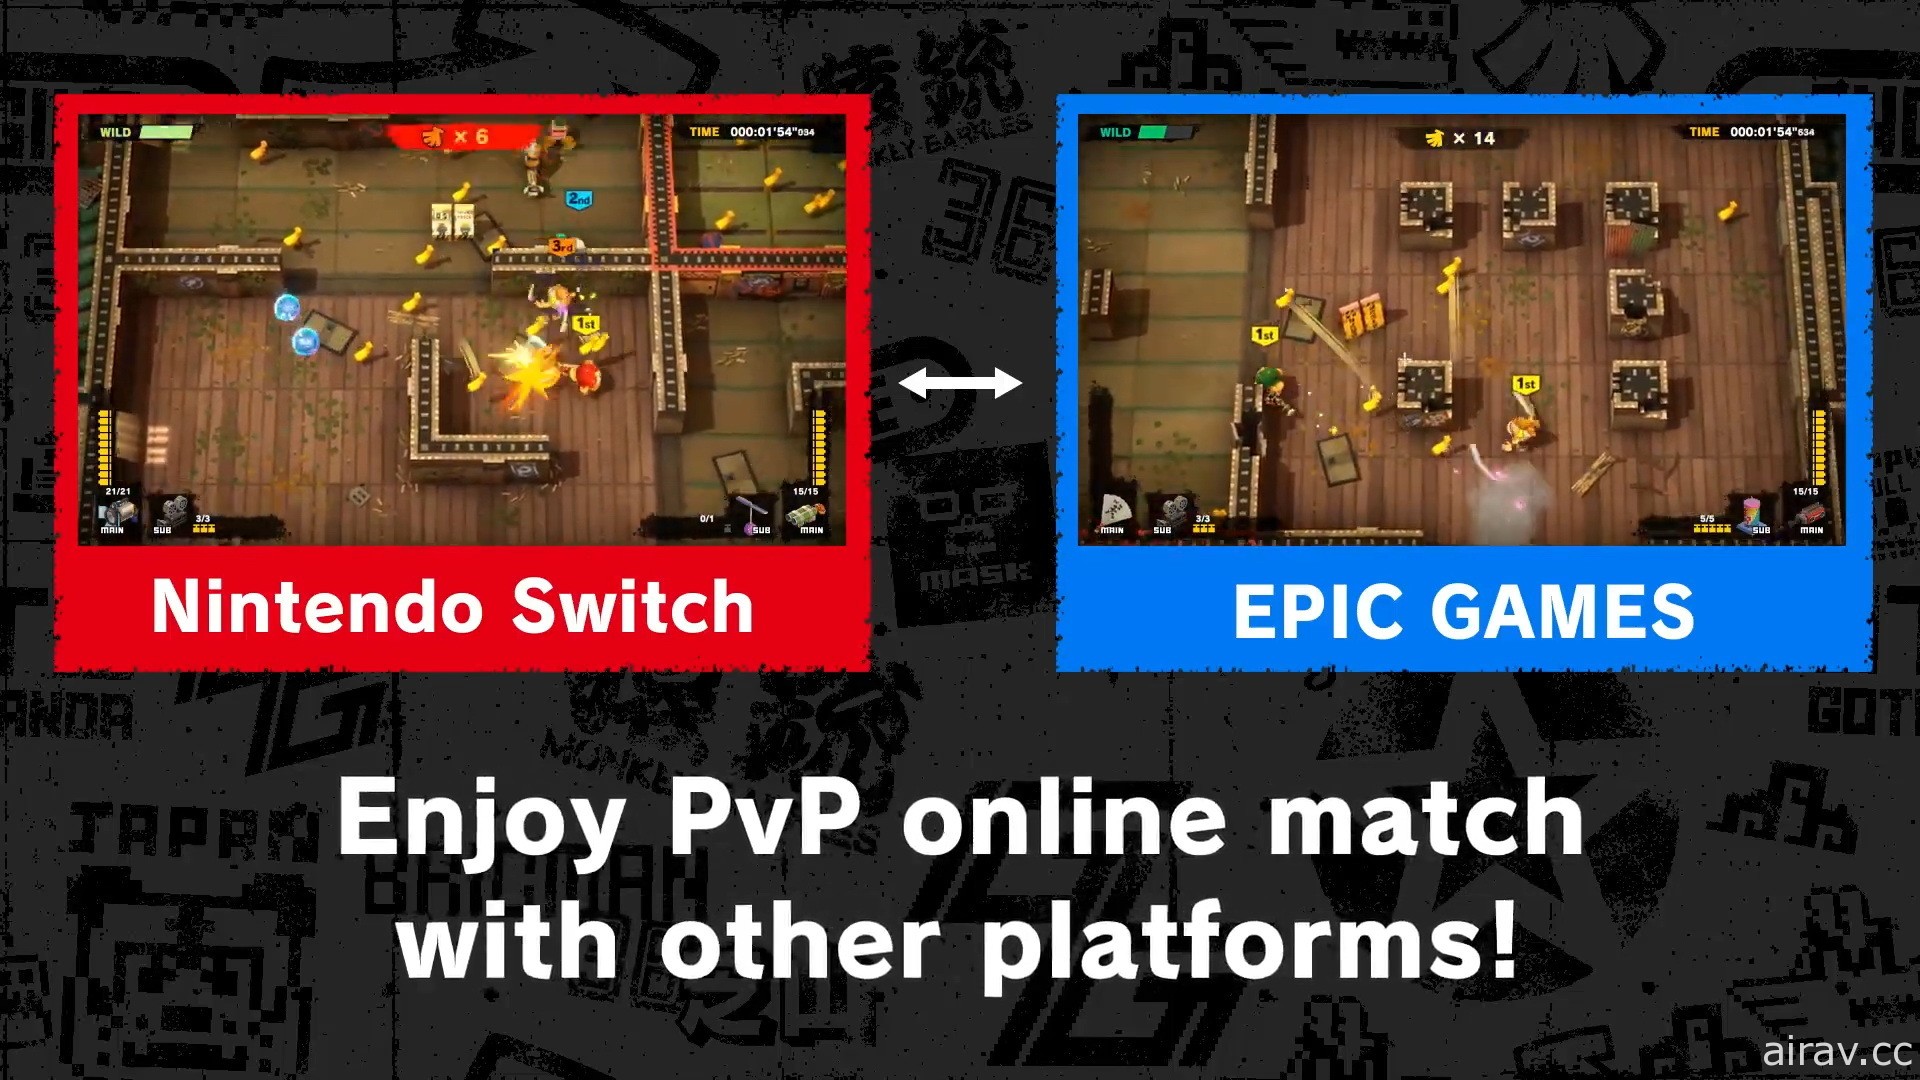 動作射擊遊戲《猴子桶戰》將登陸 PC 平台 支援跨平台 PVP 對戰